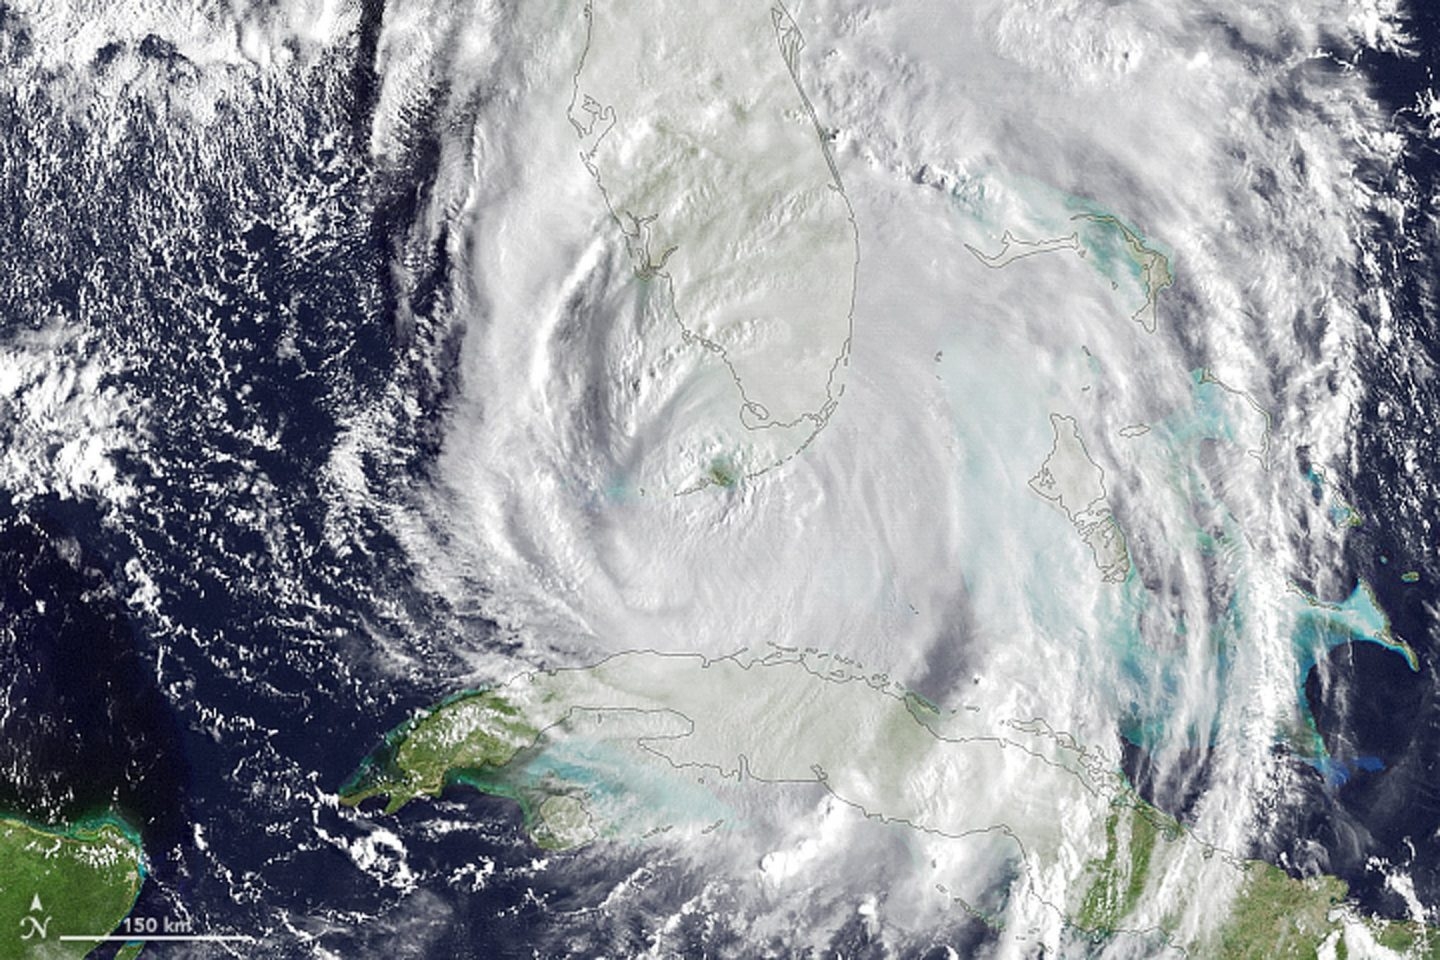 Los fenómenos climáticos extremos como 'Irma' están causados por el Cambio Climático